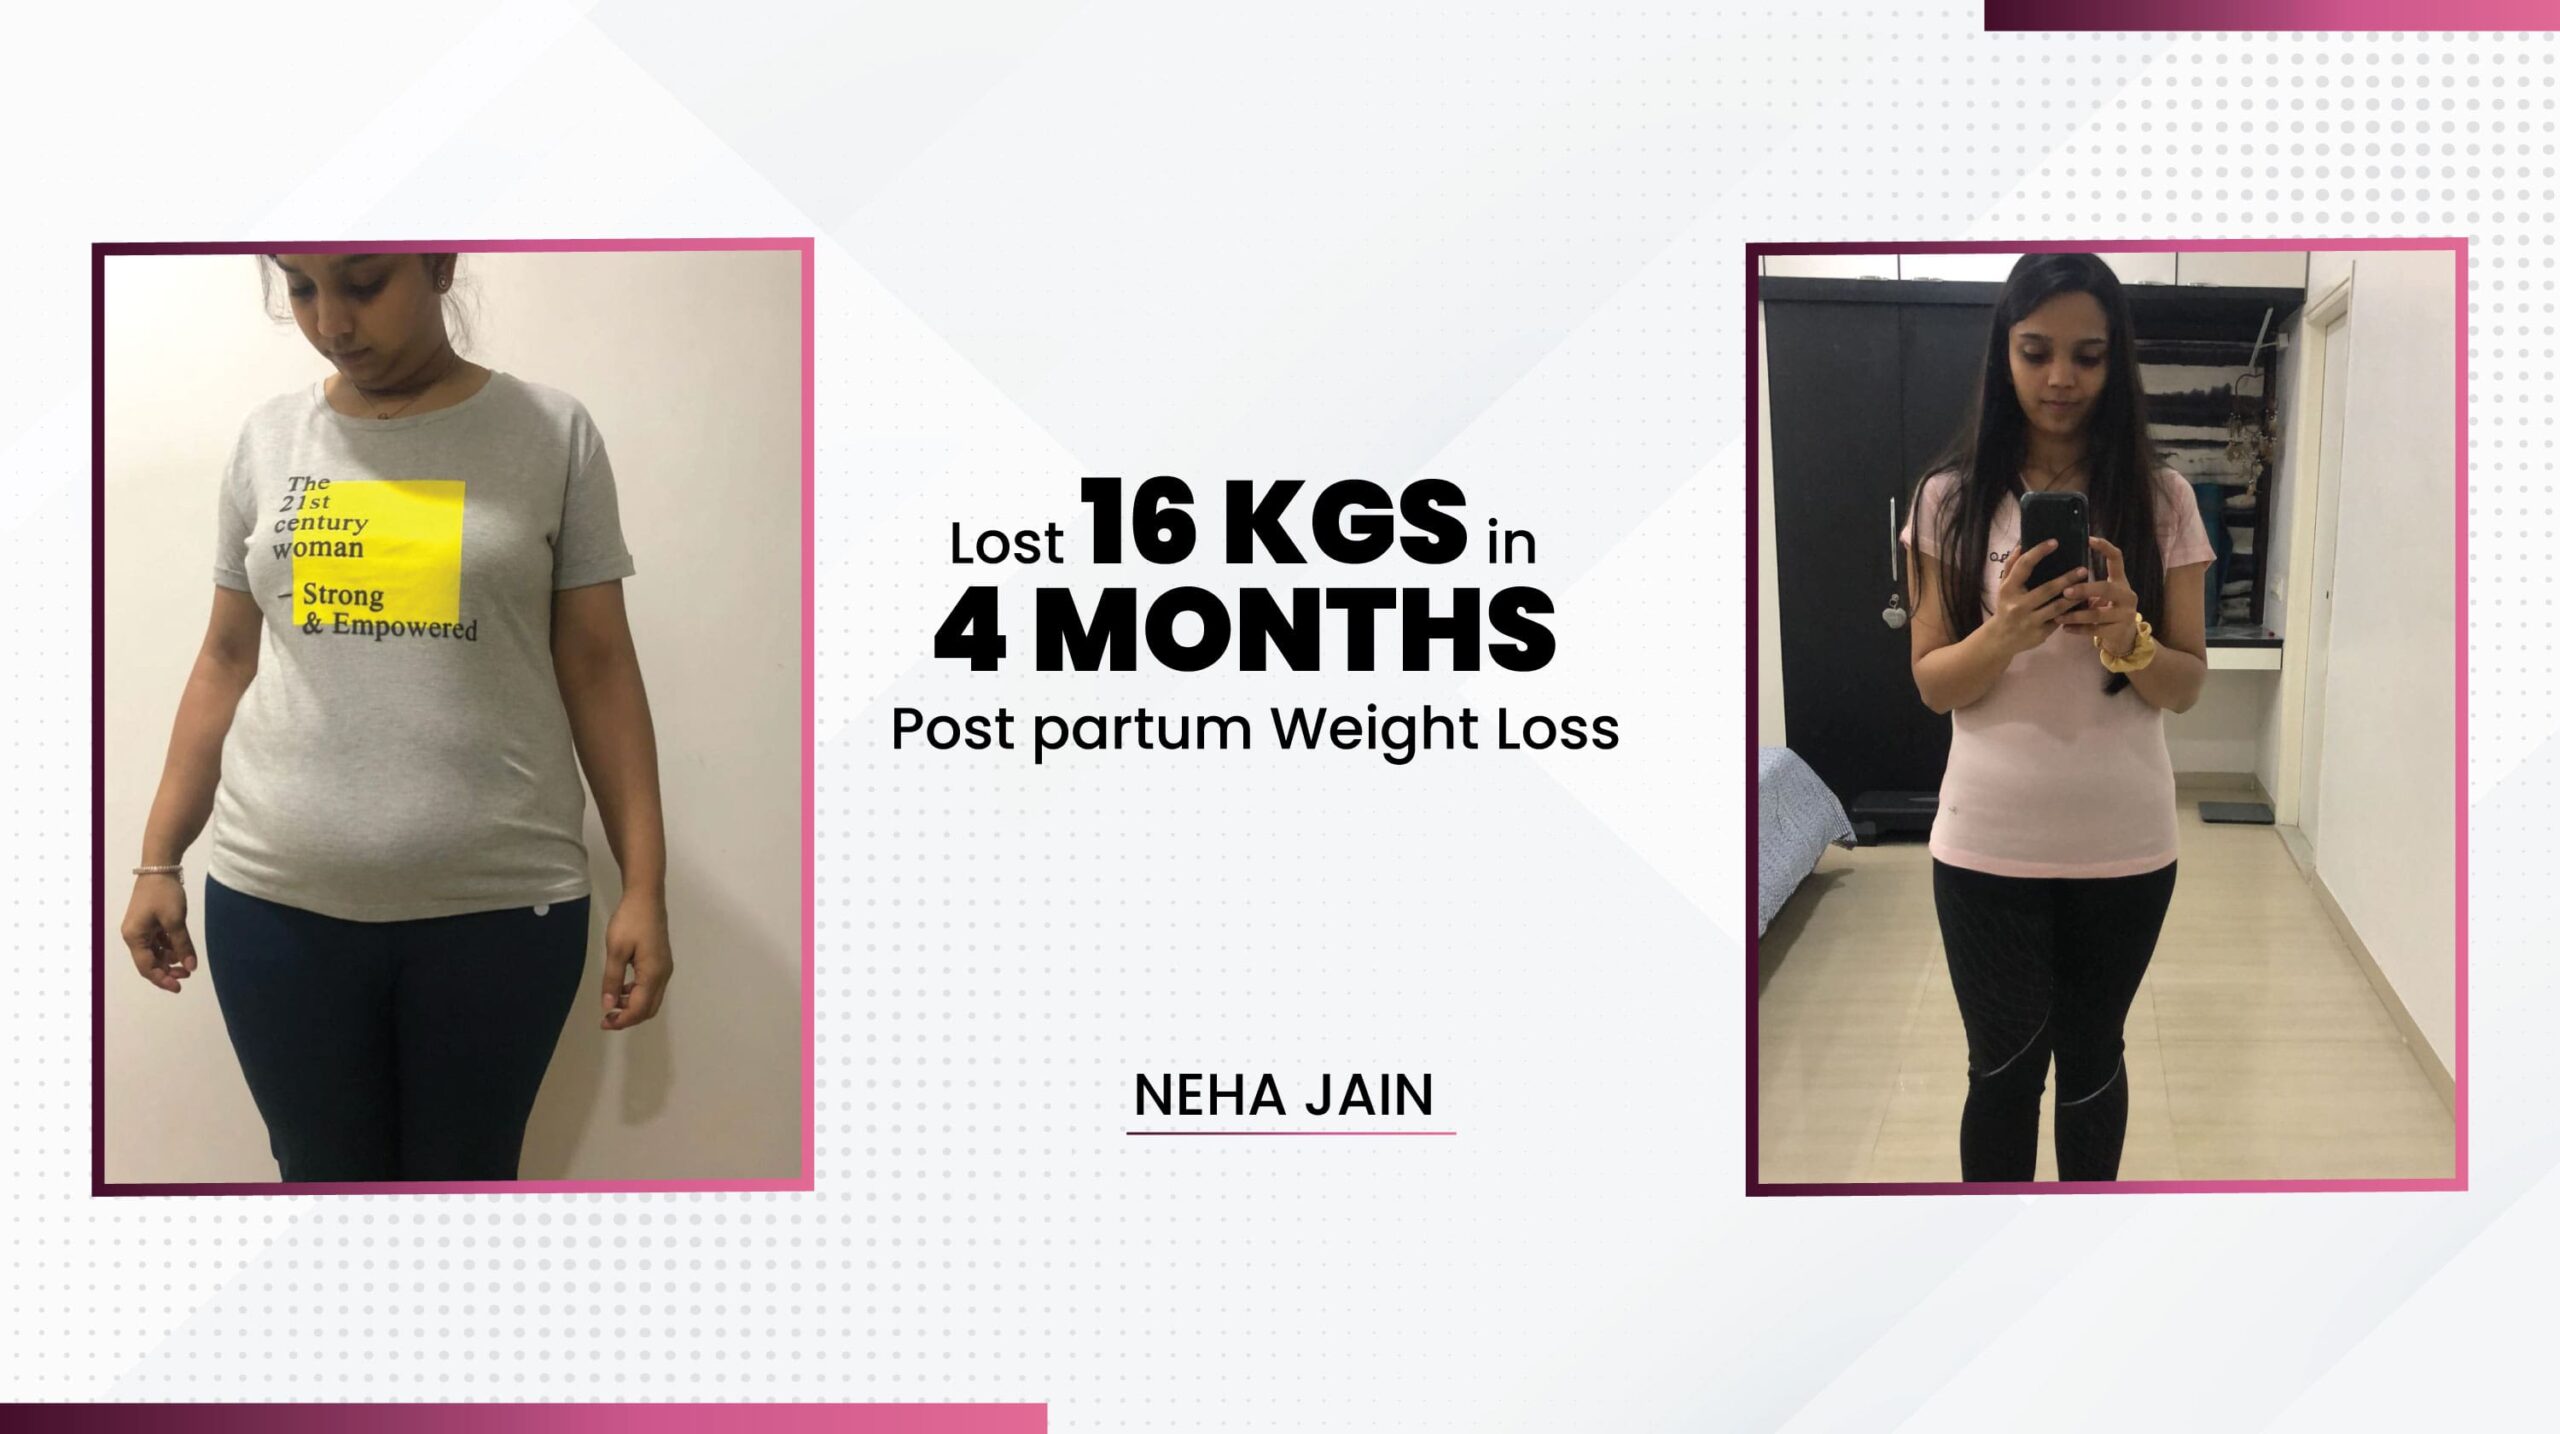 11neha jain postpartum weight loss transformation in 4 months